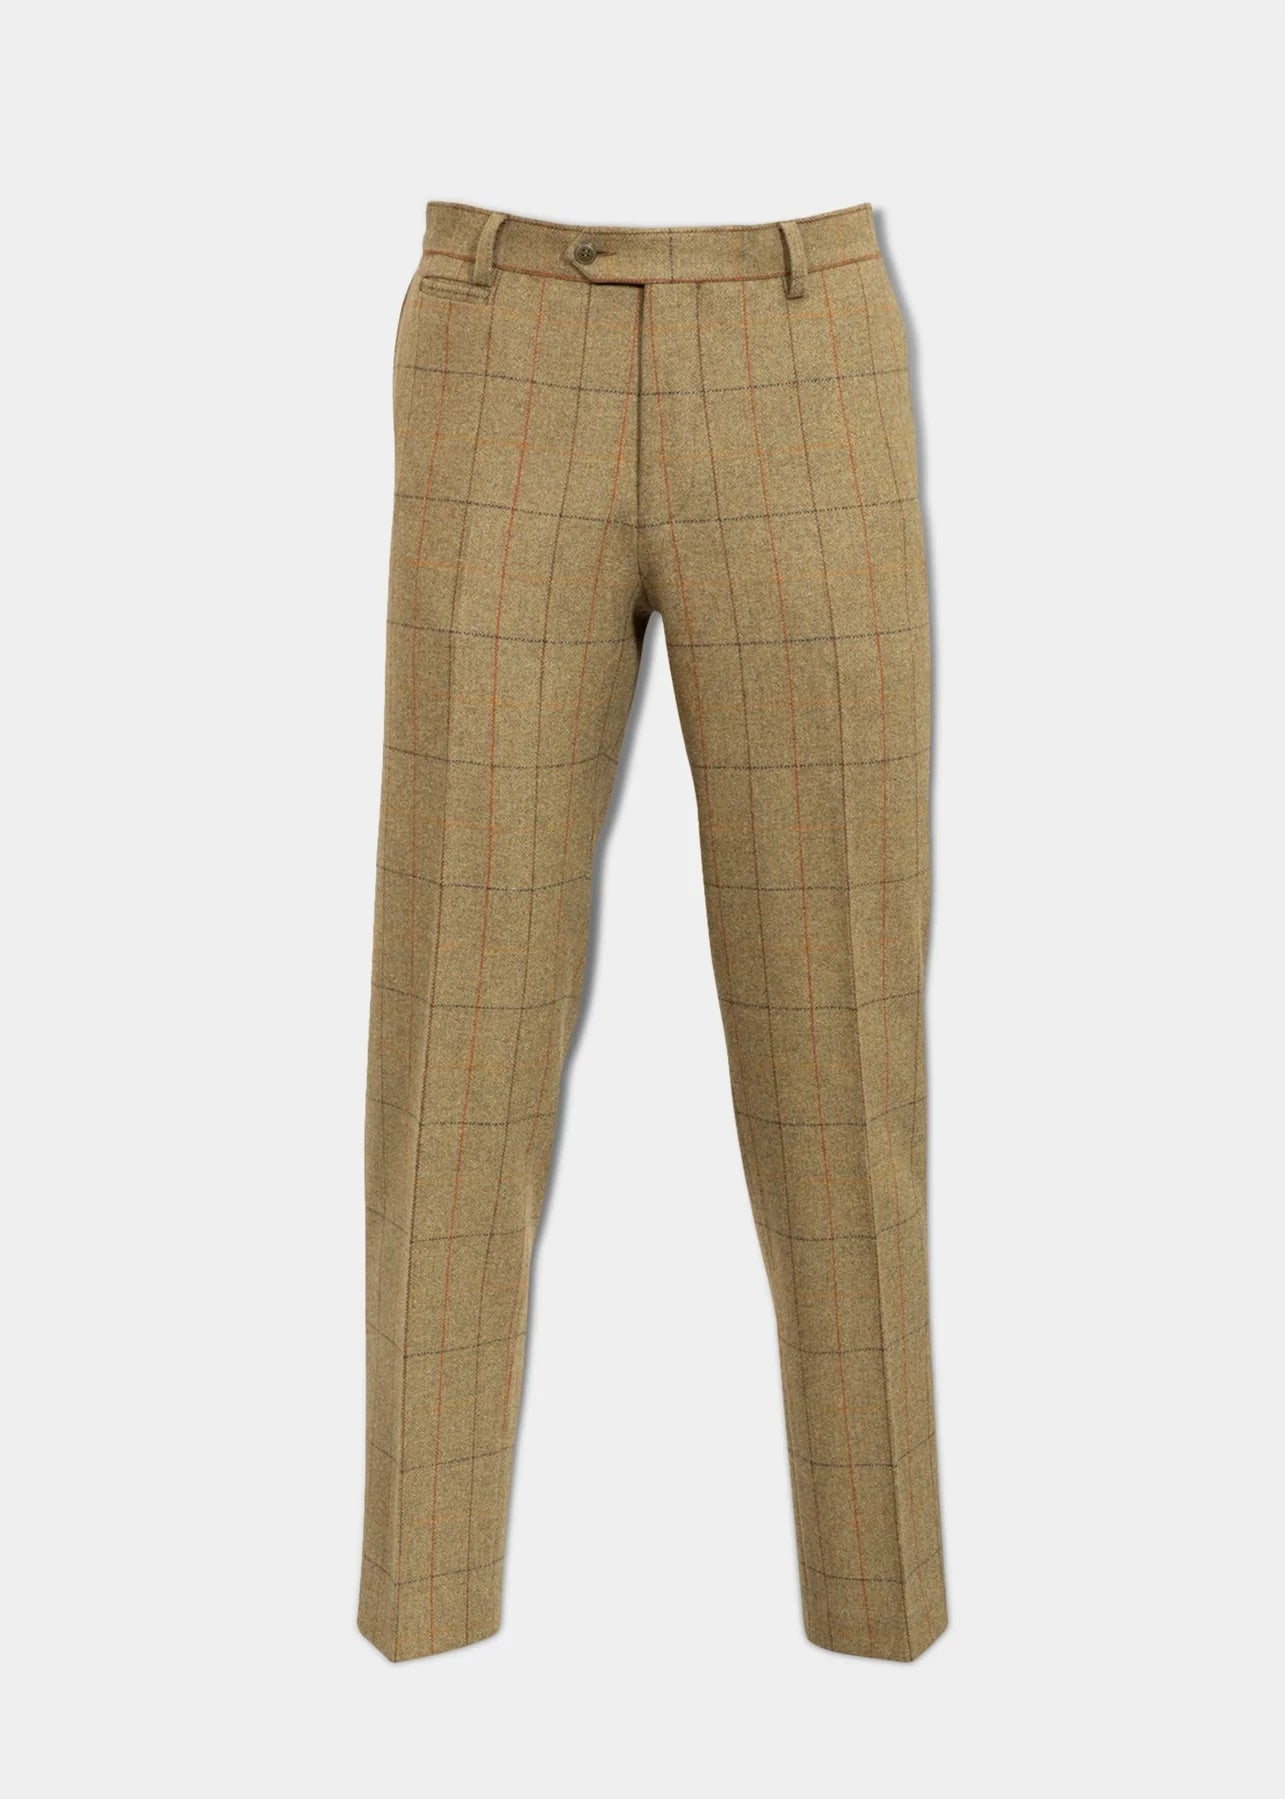 Men's Combrook Tweed Trousers